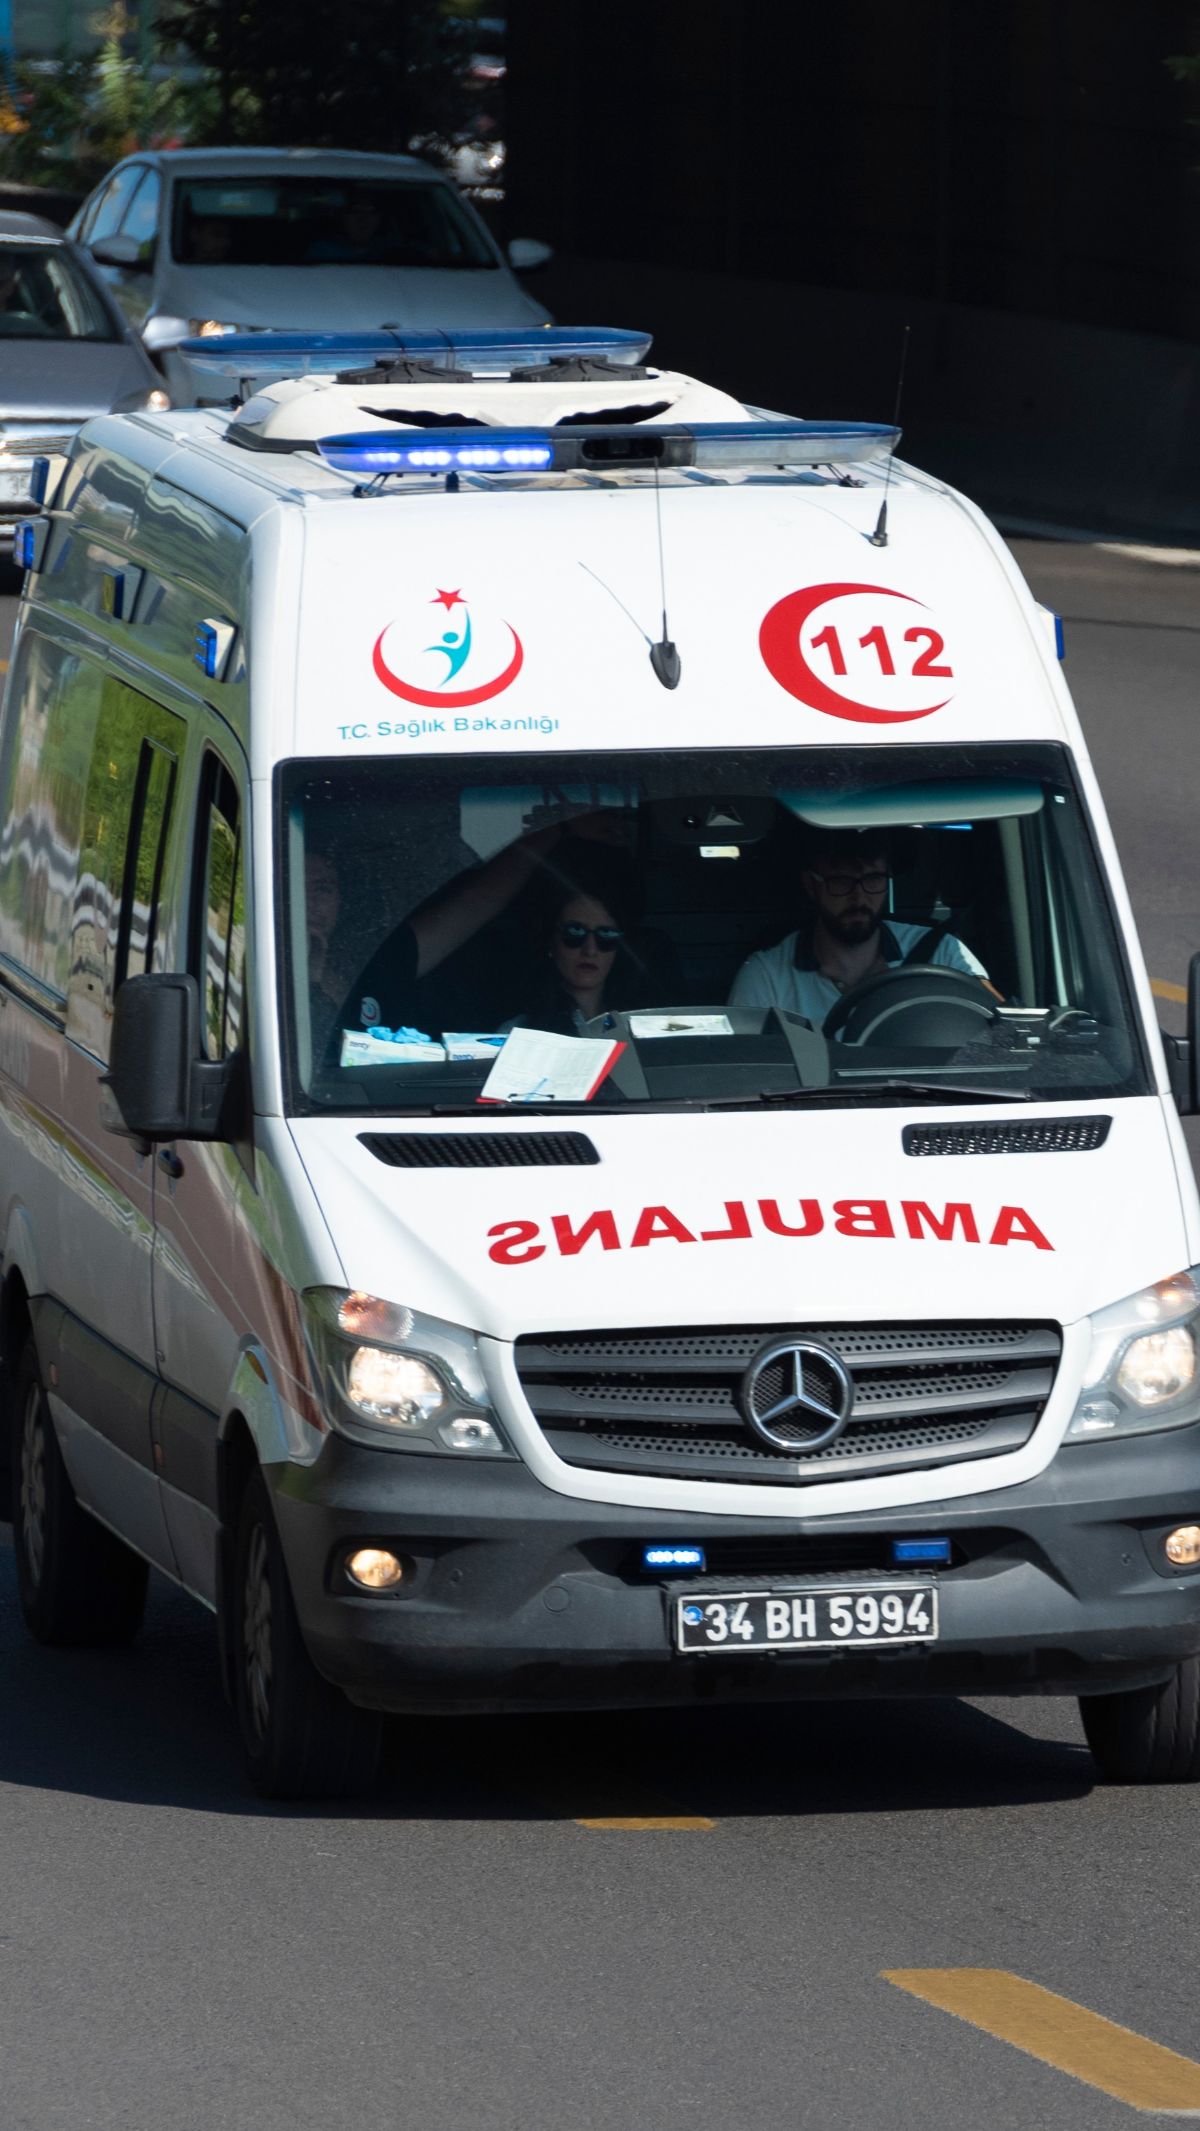 Curhat Sopir Ambulans yang Hatinya Remuk Redam karena Pasien Meninggal dalam Perjalanan ke RS